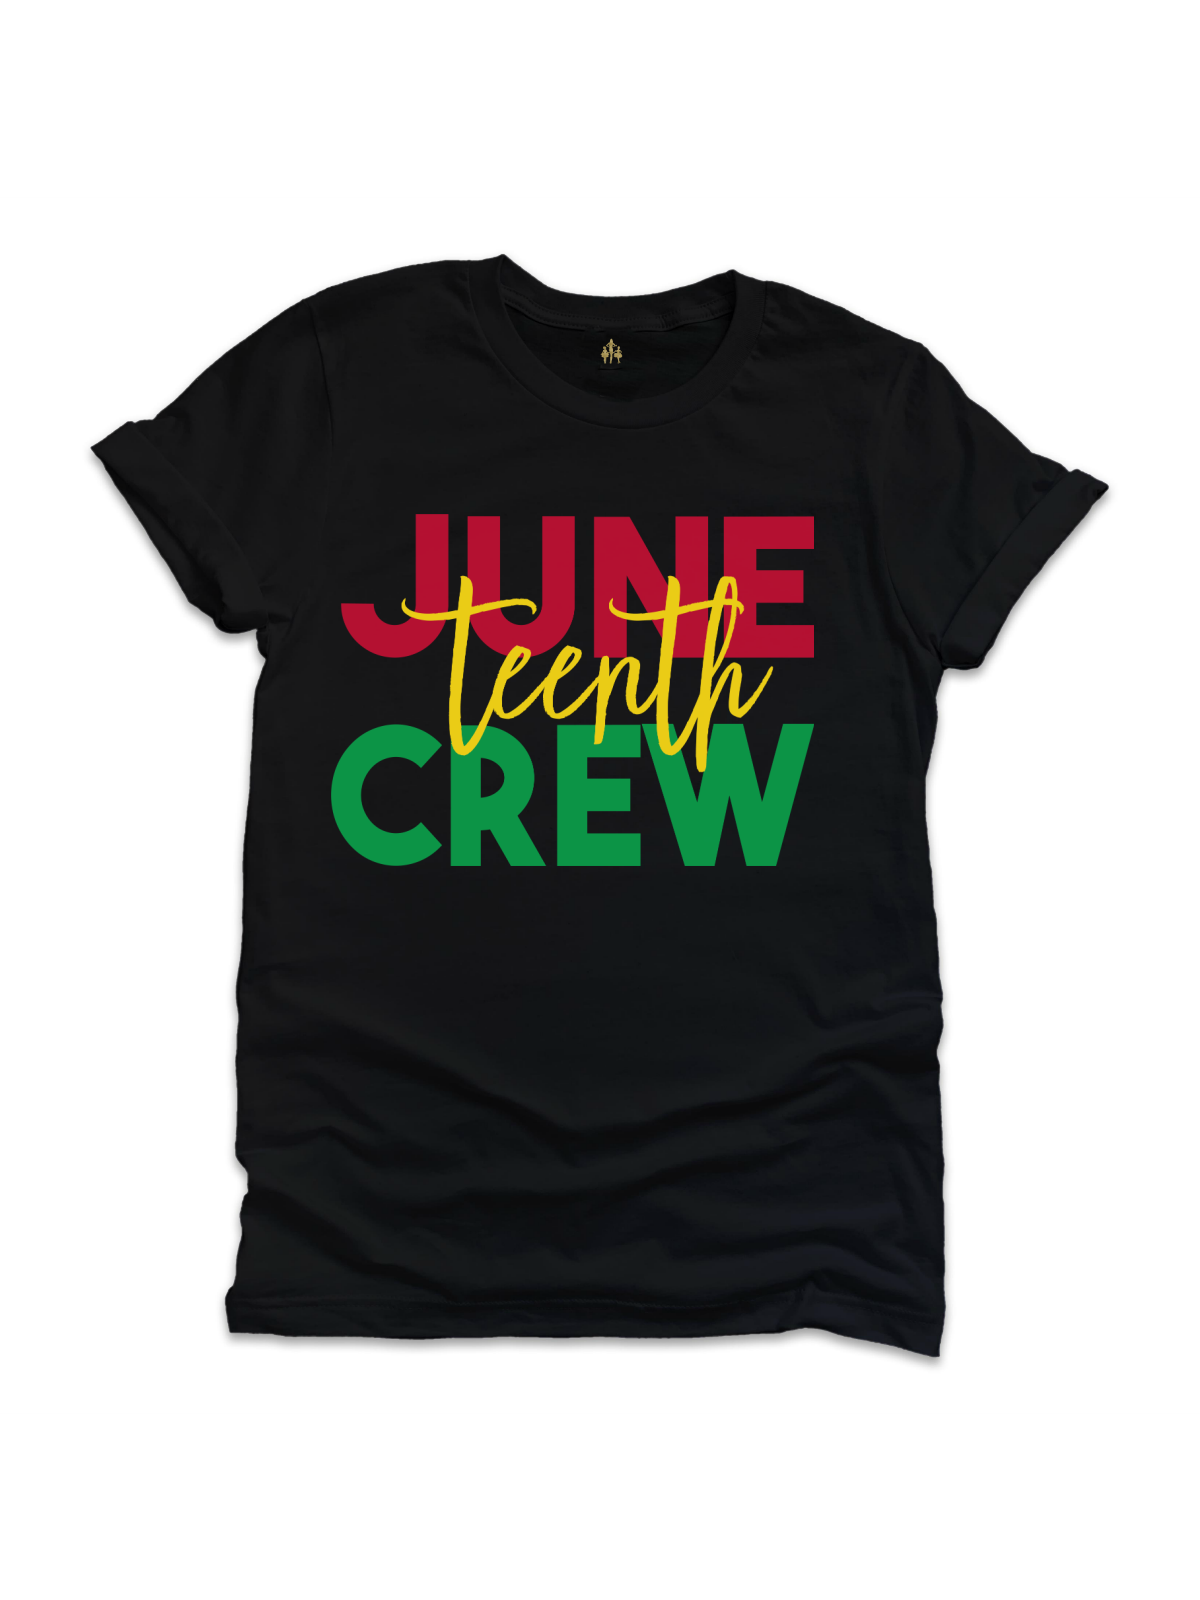 Juneteenth Crew Tees - Black